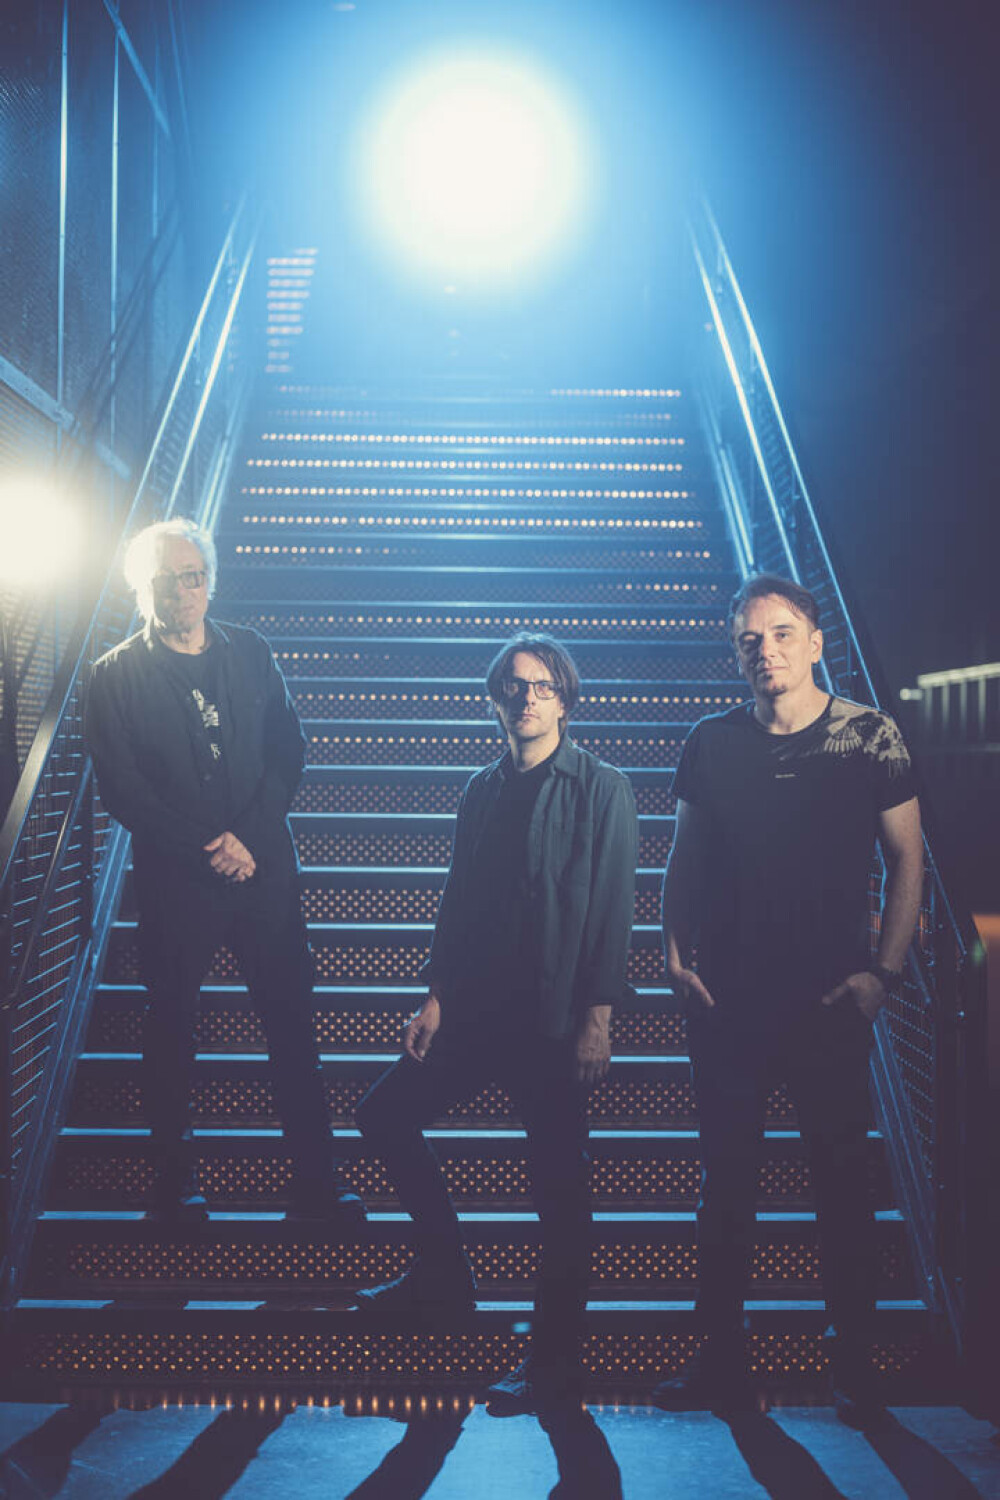 Supergrupul de rock progresiv Porcupine Tree va concerta, în premieră în România, la ARTmania Festival 2023 - Imaginea 3